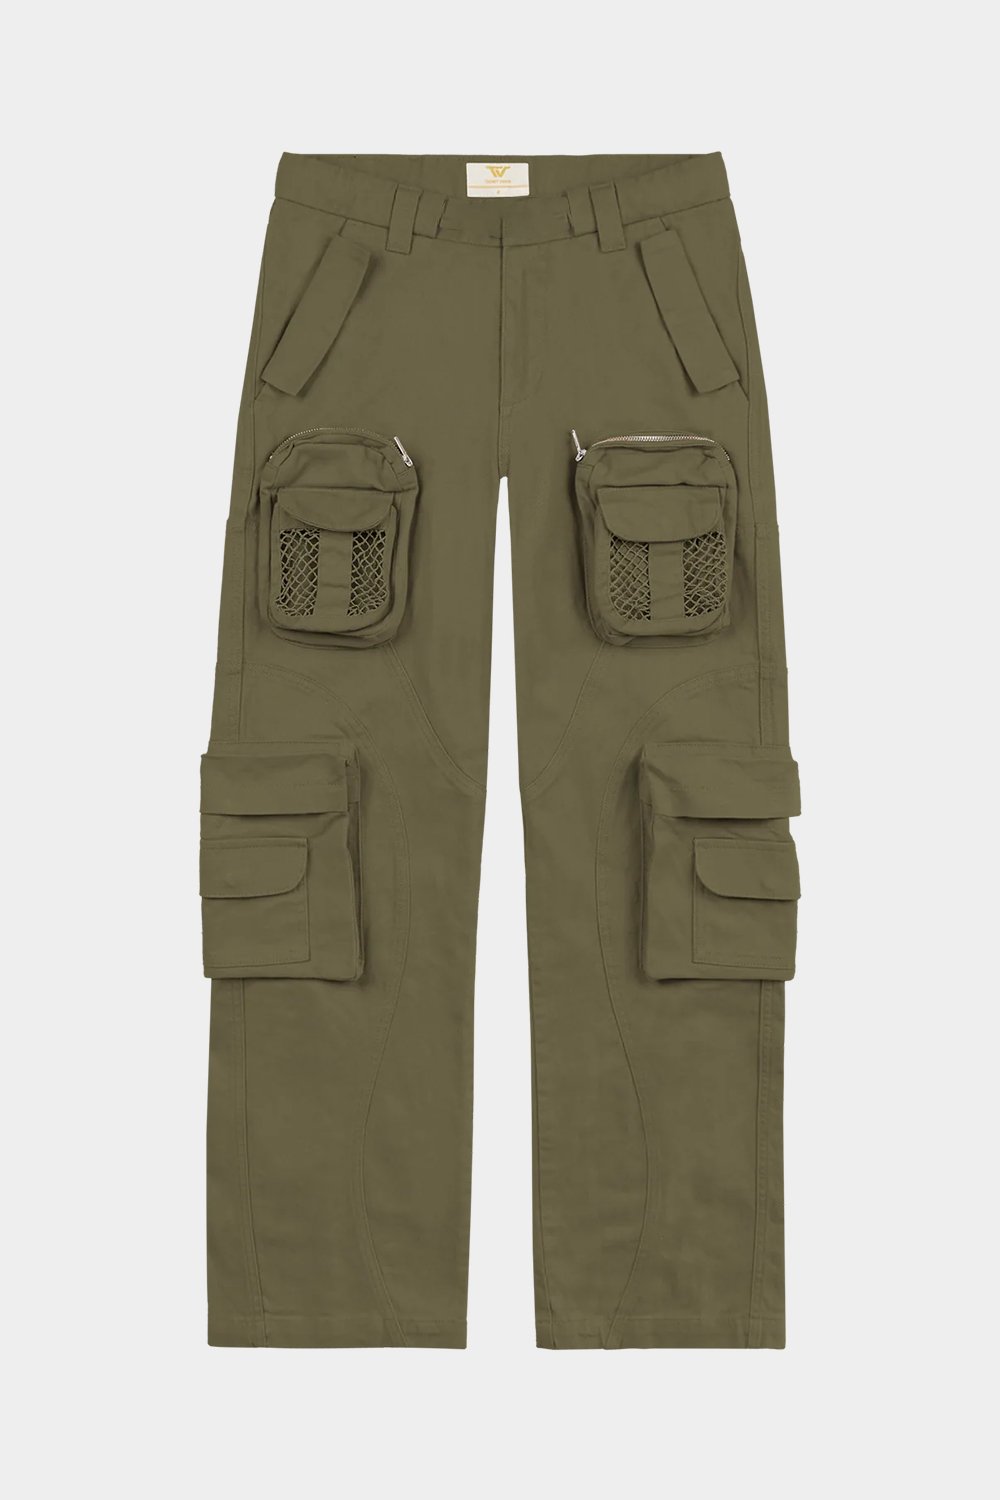 Green Net Cargo Pants (TVS2)